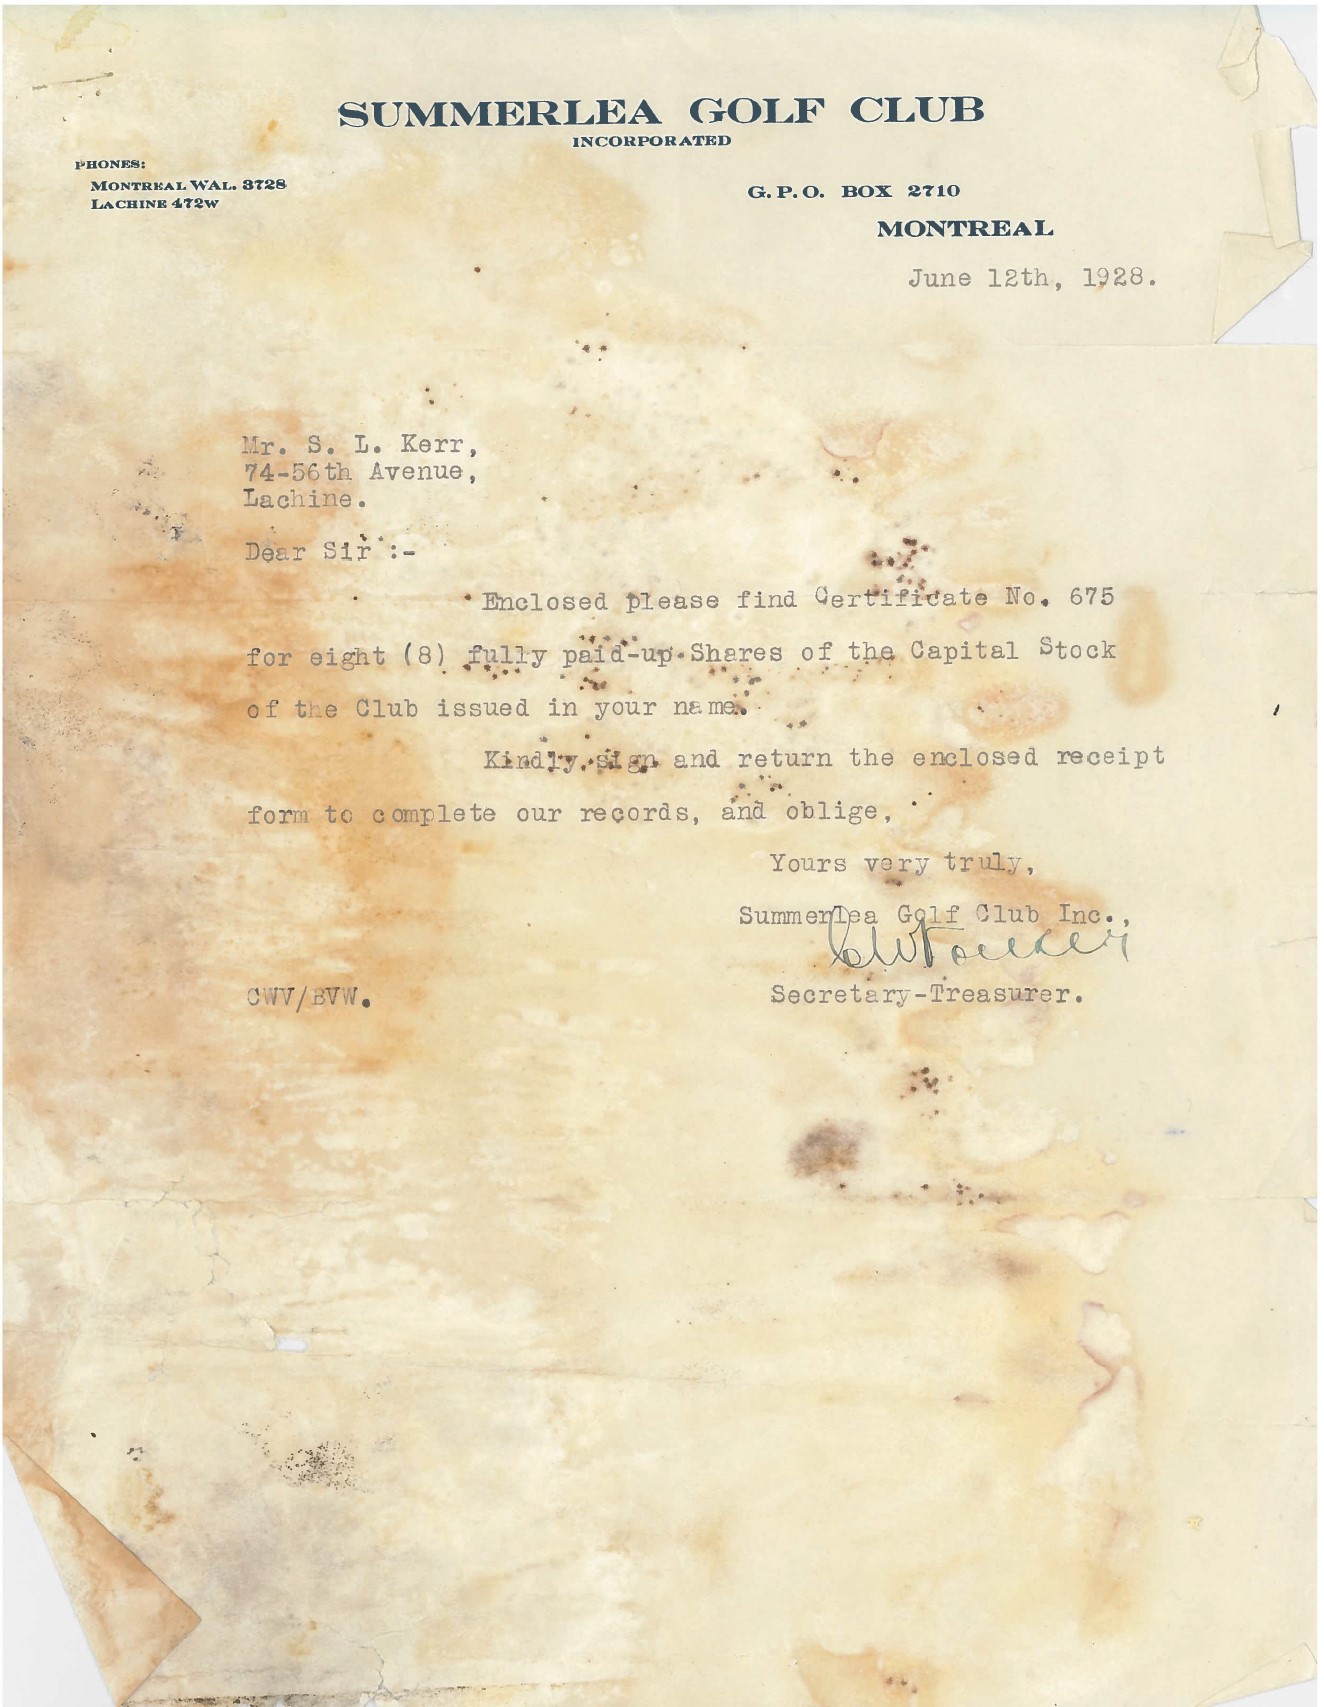 1928 Share letter